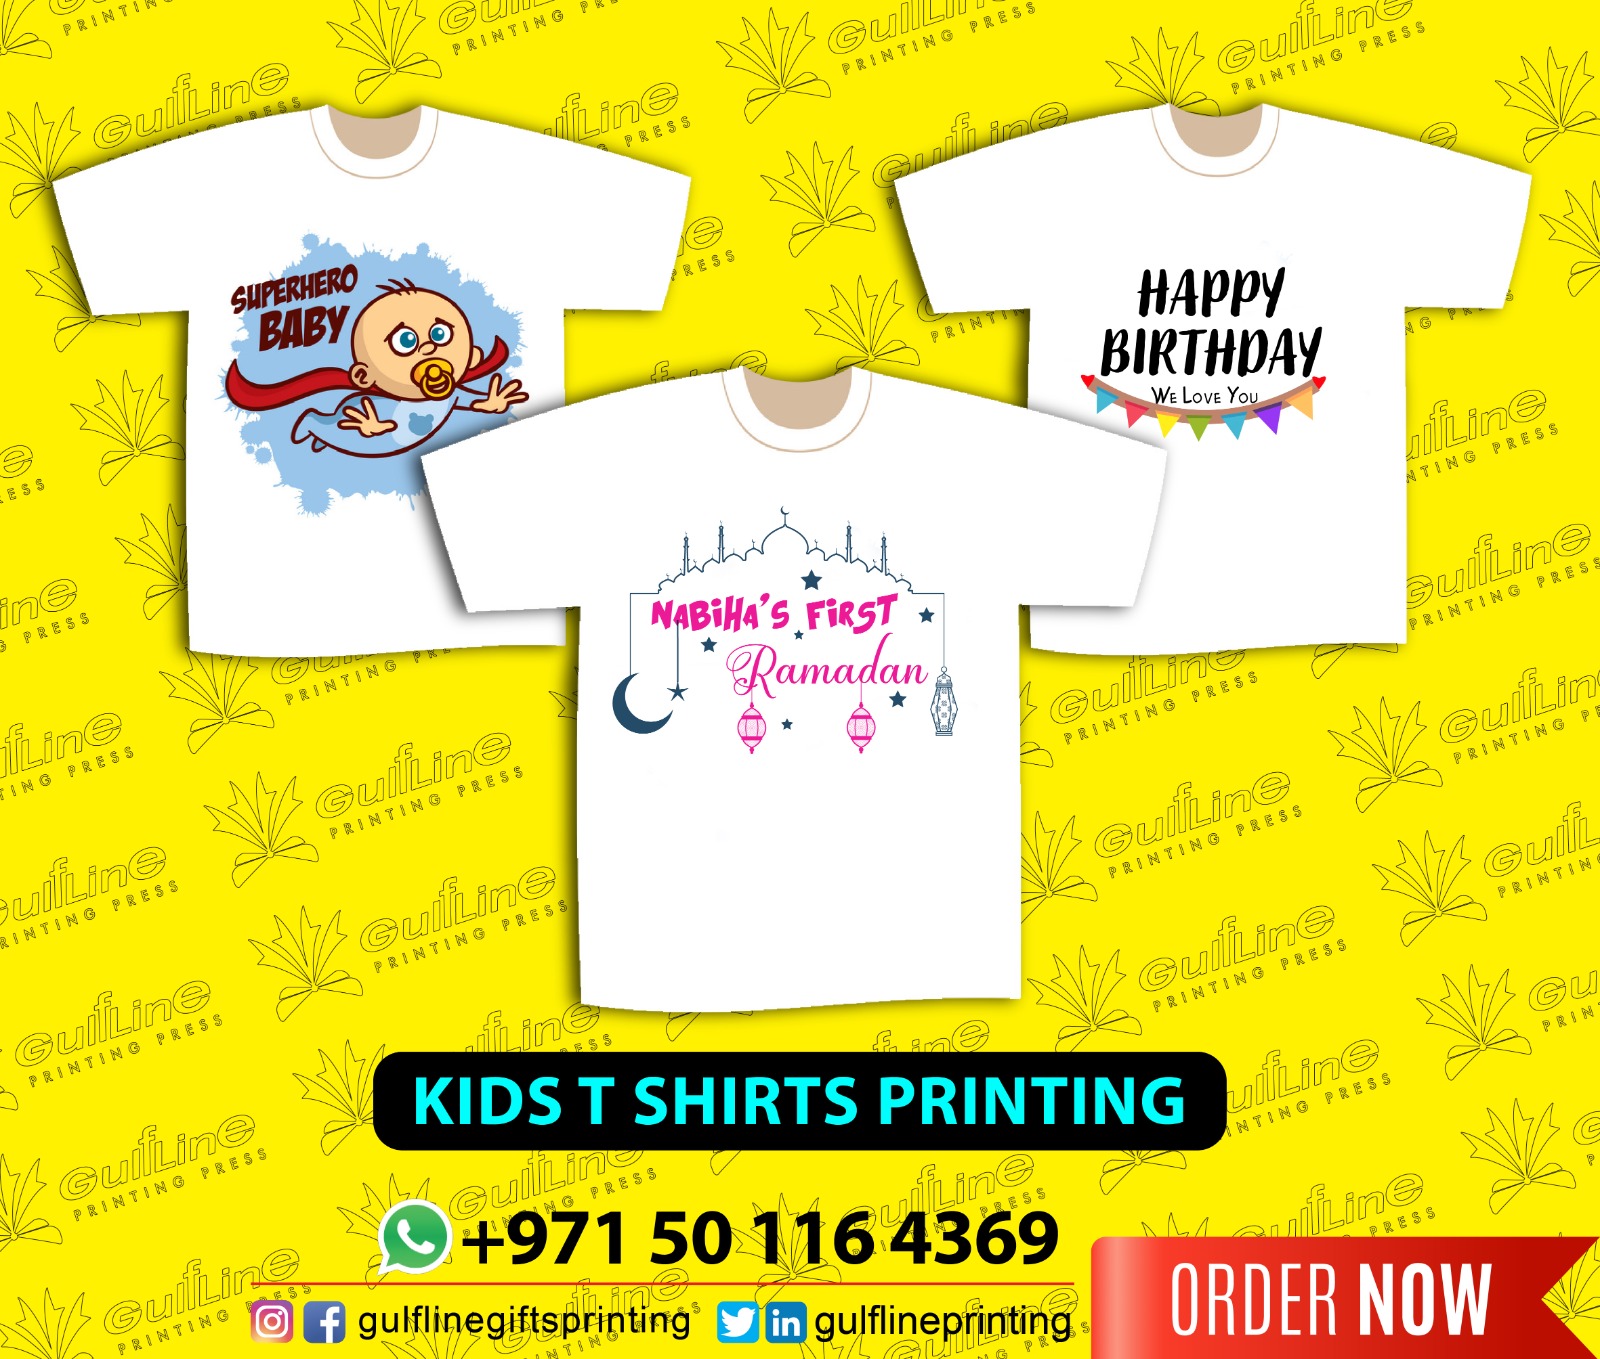 Kids Tshirts printing.jpeg